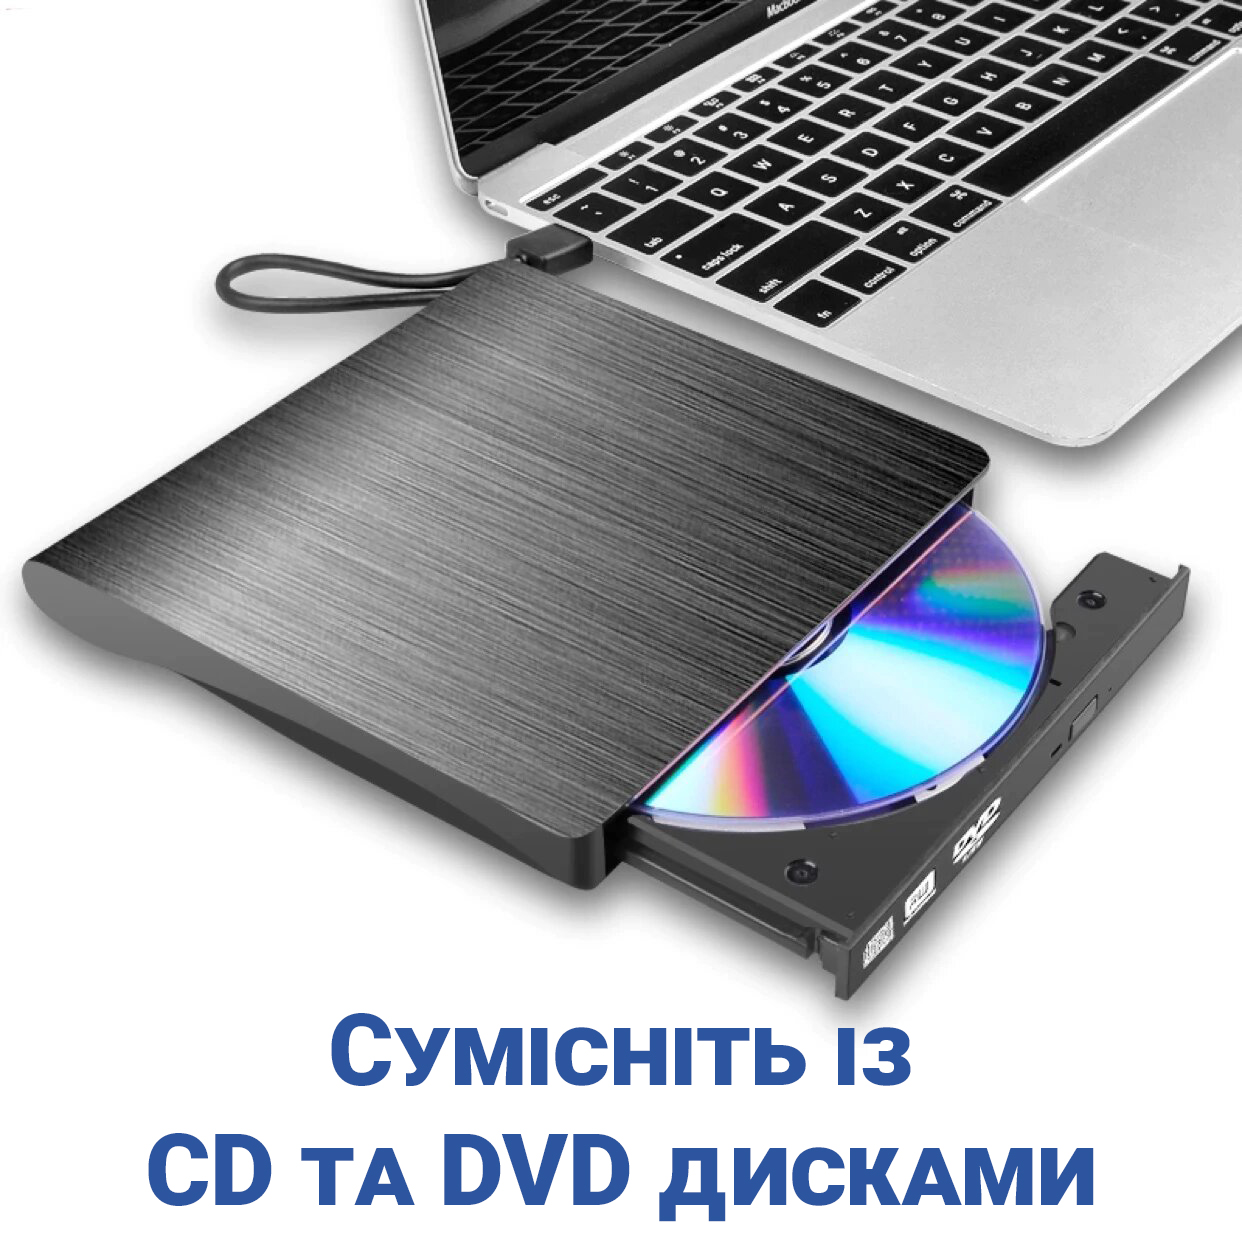 Як відкрити DVD привід на комп'ютері?